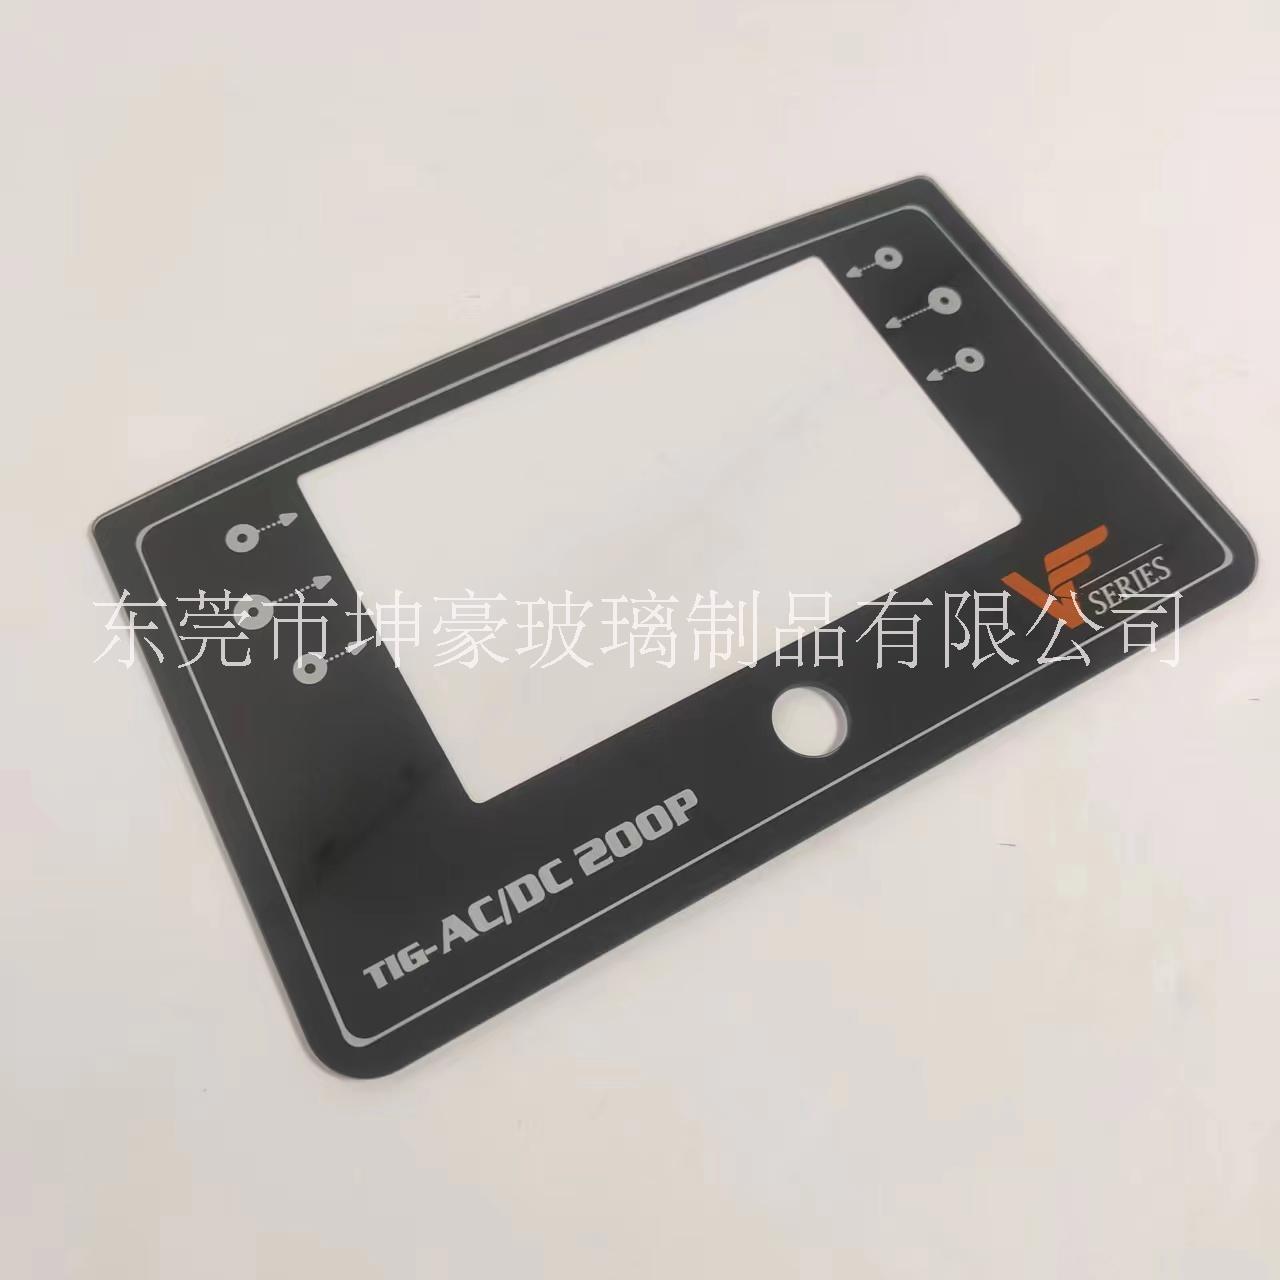 丝印玻璃面板智能触摸屏玻璃 2mm设备保护盖板玻璃丝印黑色油墨工艺批量生产